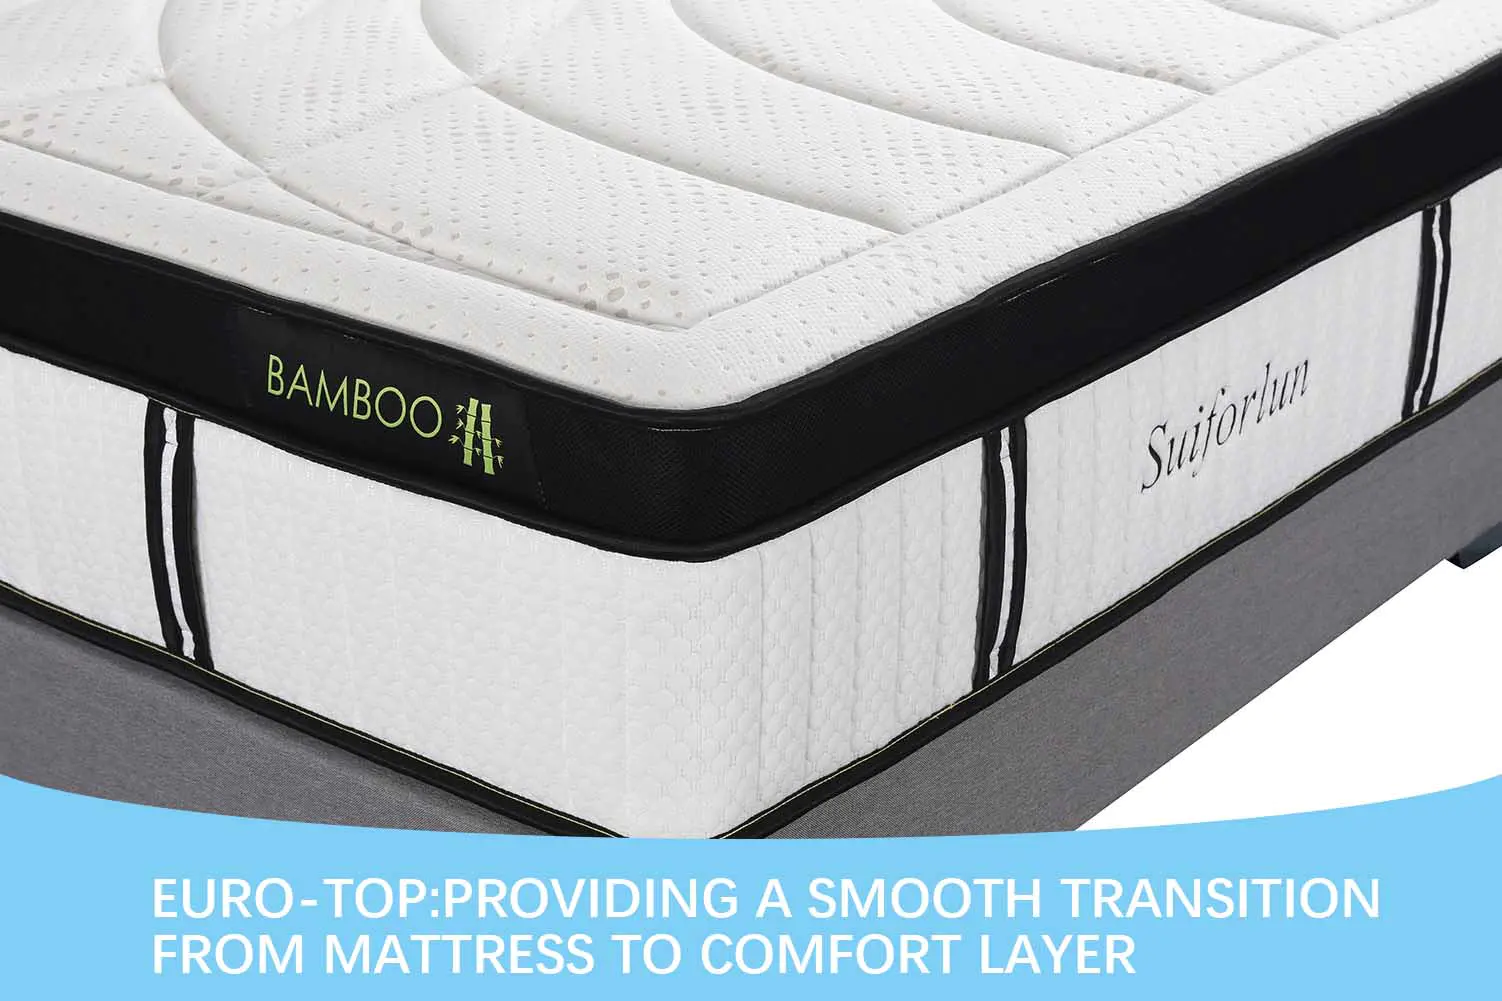 stable hybrid mattress white supplier for family